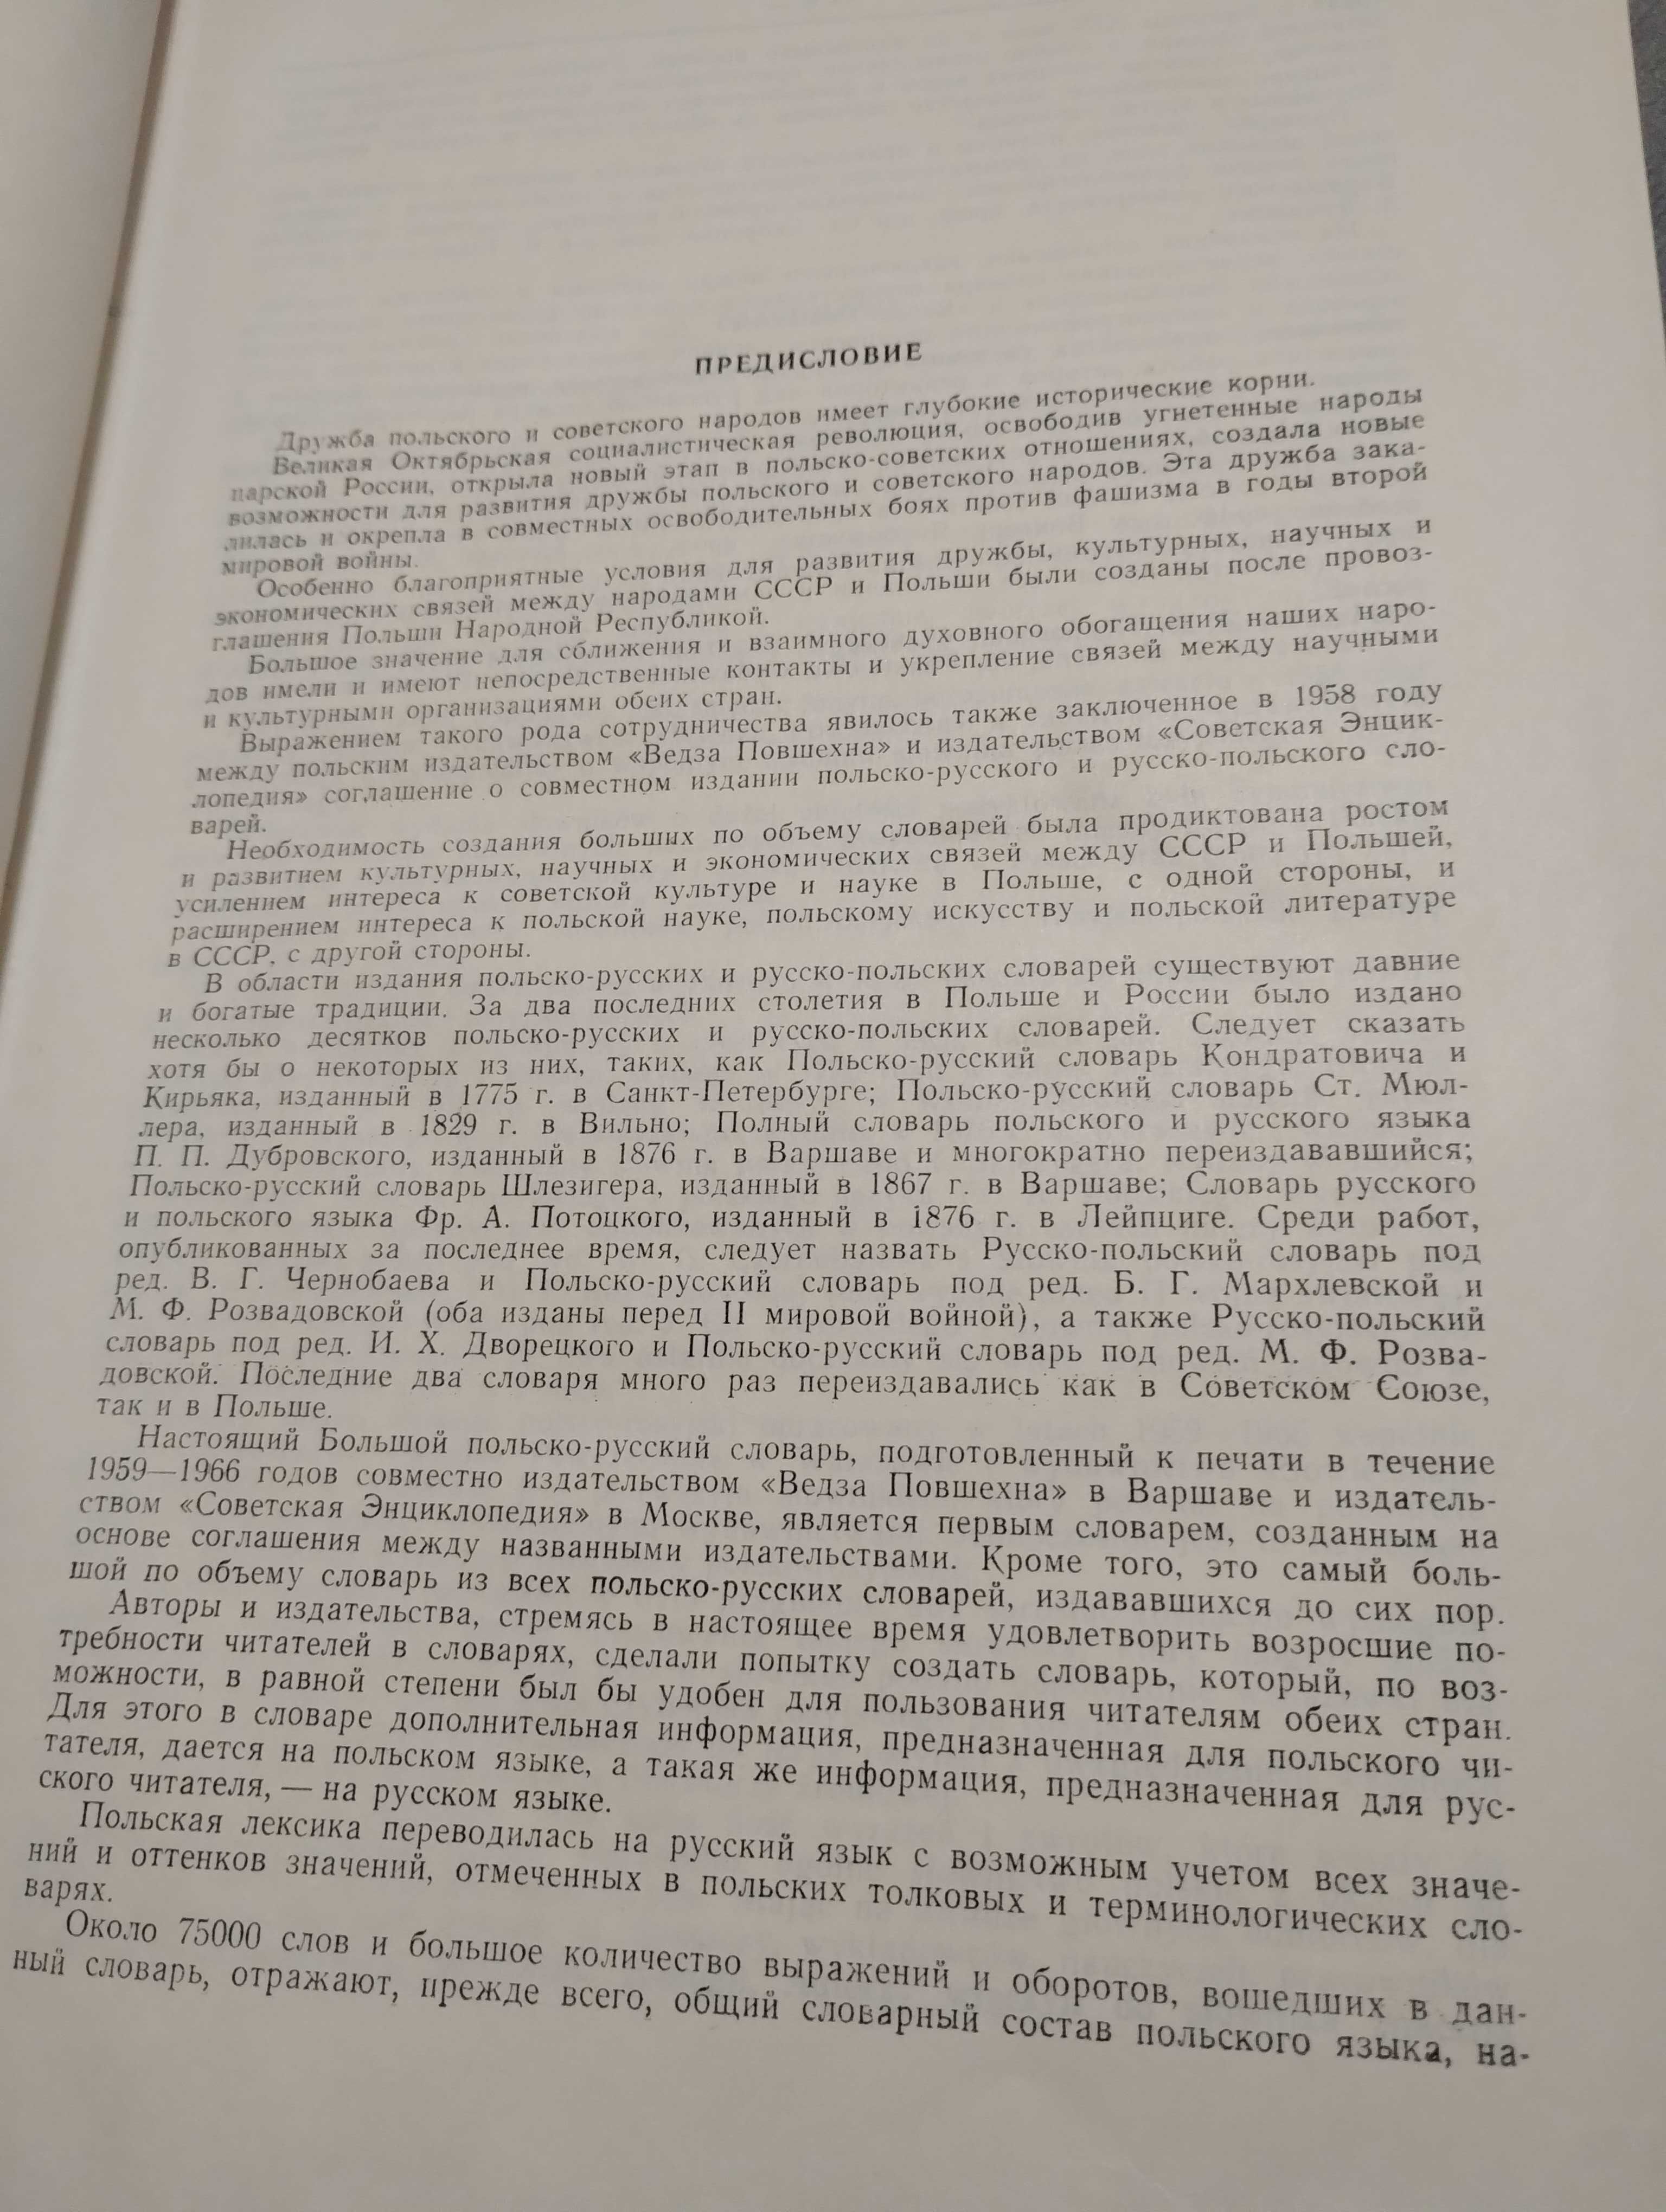 Большой Польско-Русский словарь 75000 слов 1976 год. Гессен, Стыпула.